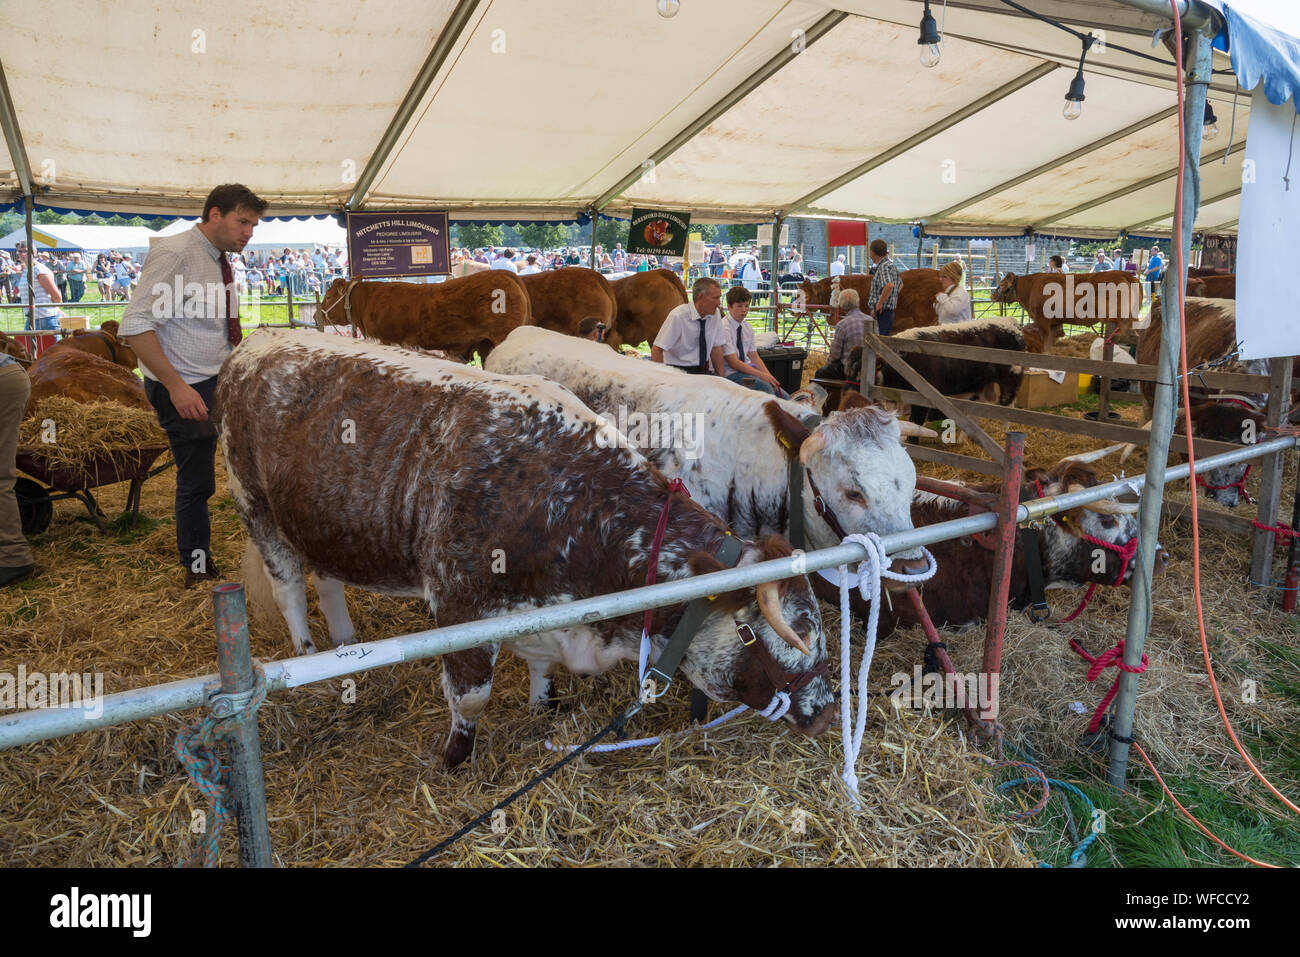 Hoffen auf den August Bank Holiday 2019 in Derbyshire, England. Vieh im Schatten der Markise. Stockfoto